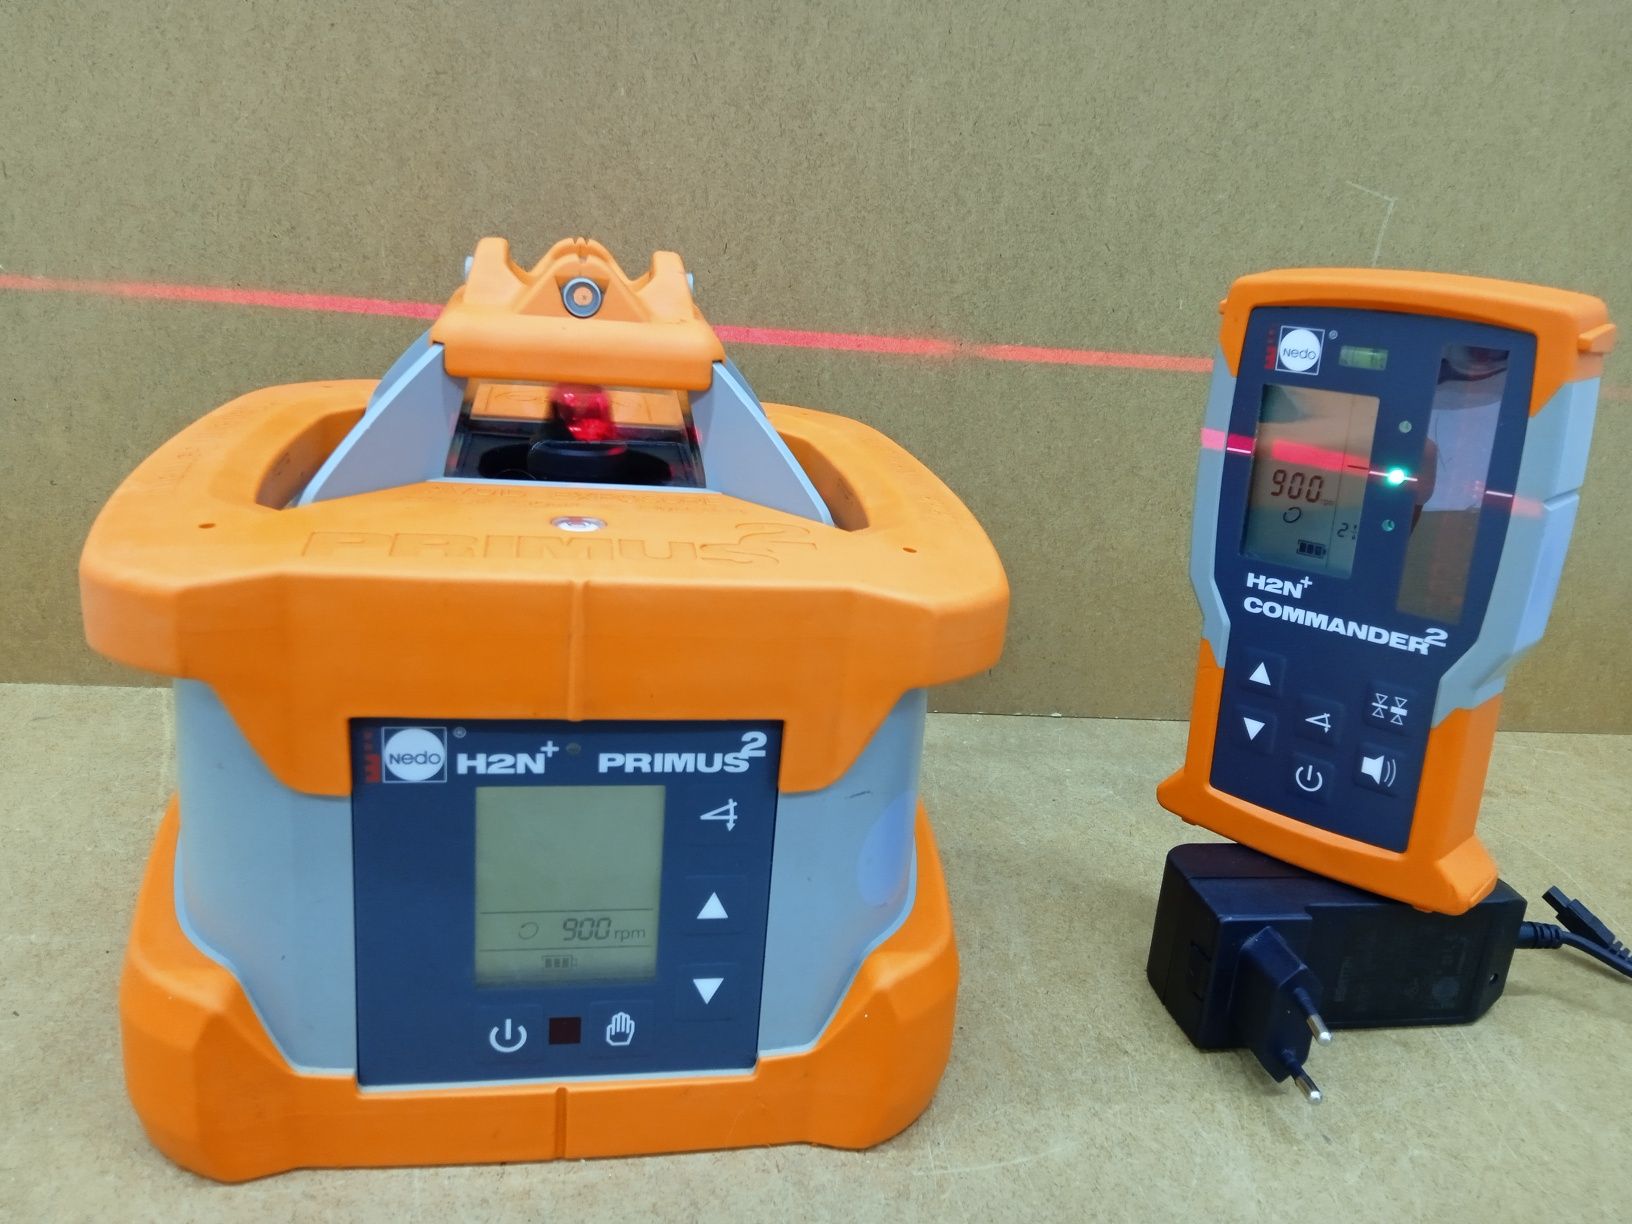 Nedo Primus2 H2N+ Niwelator Laserowy Monitoring Nachylenia Spadku X Y